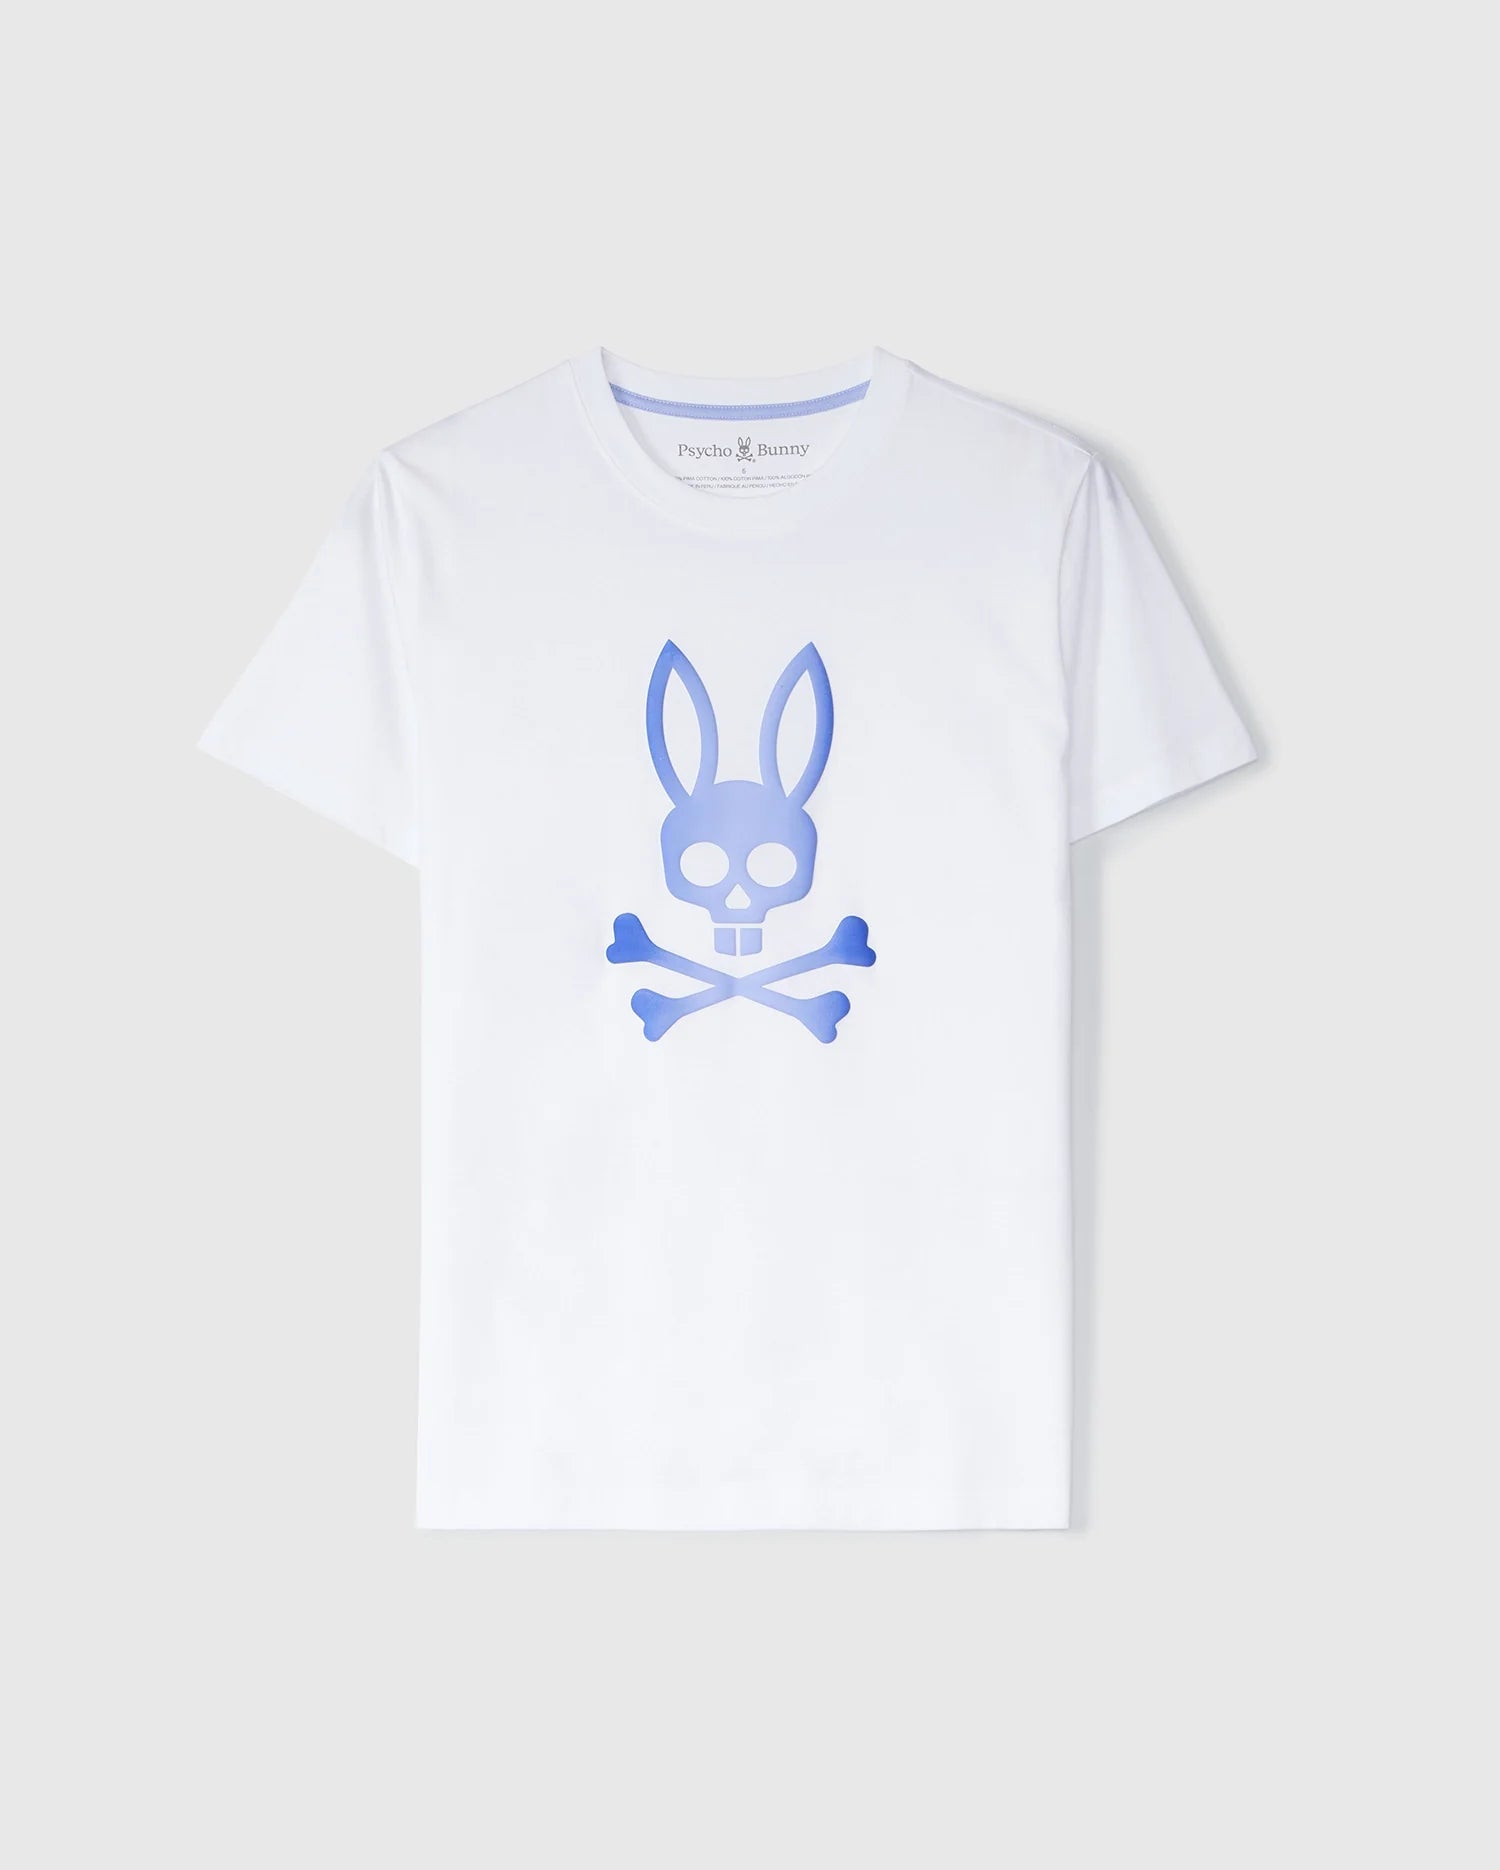 Bunny Rabbit Shorts -  Canada